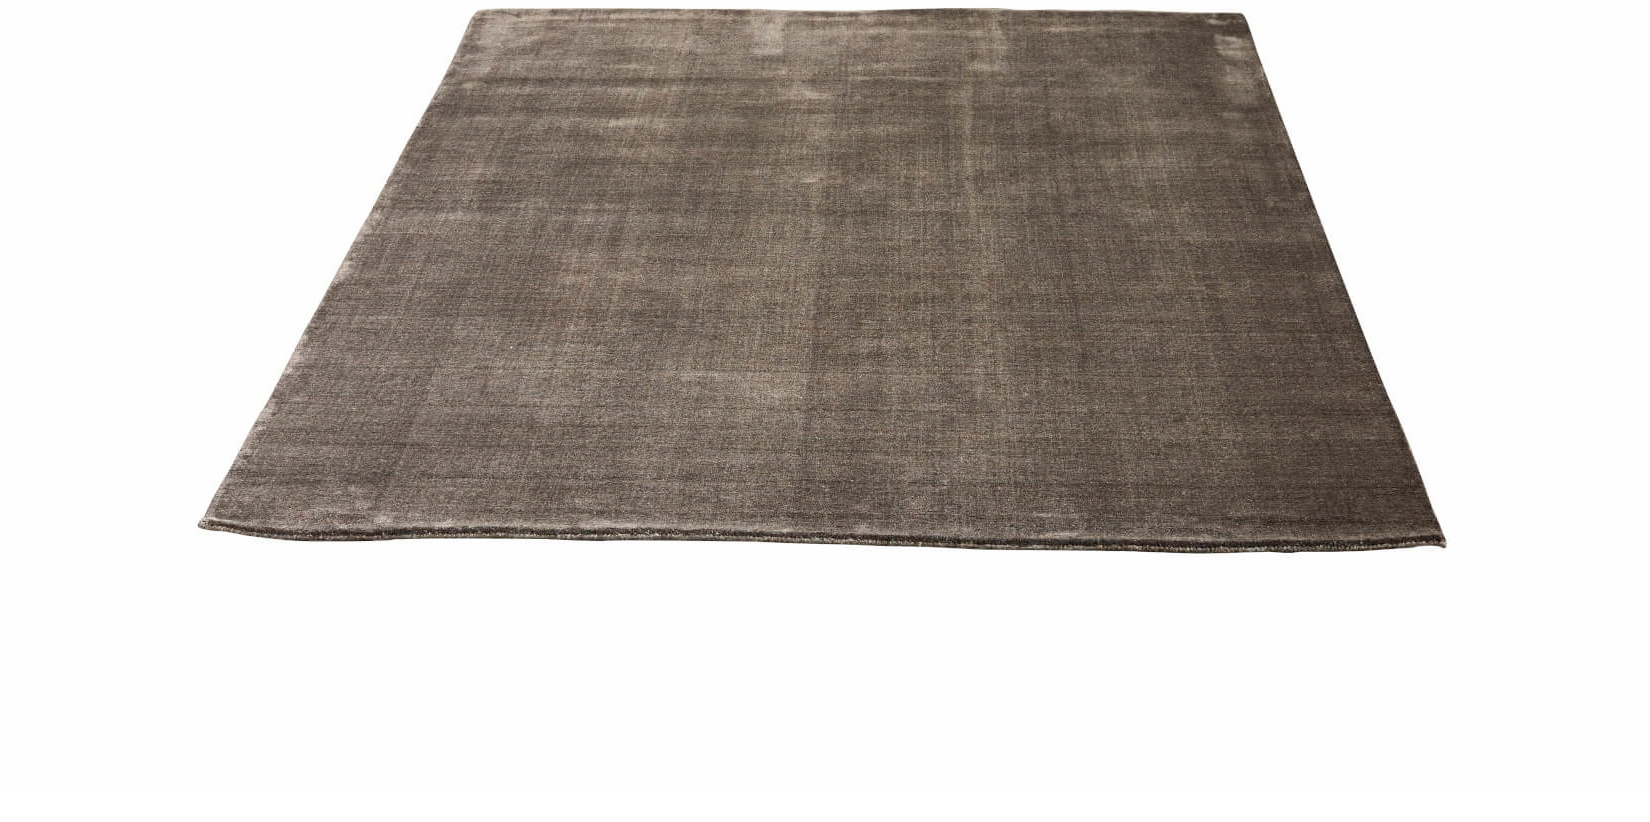 Earth Bamboo Teppich, 250 x 300 cm, wam grey